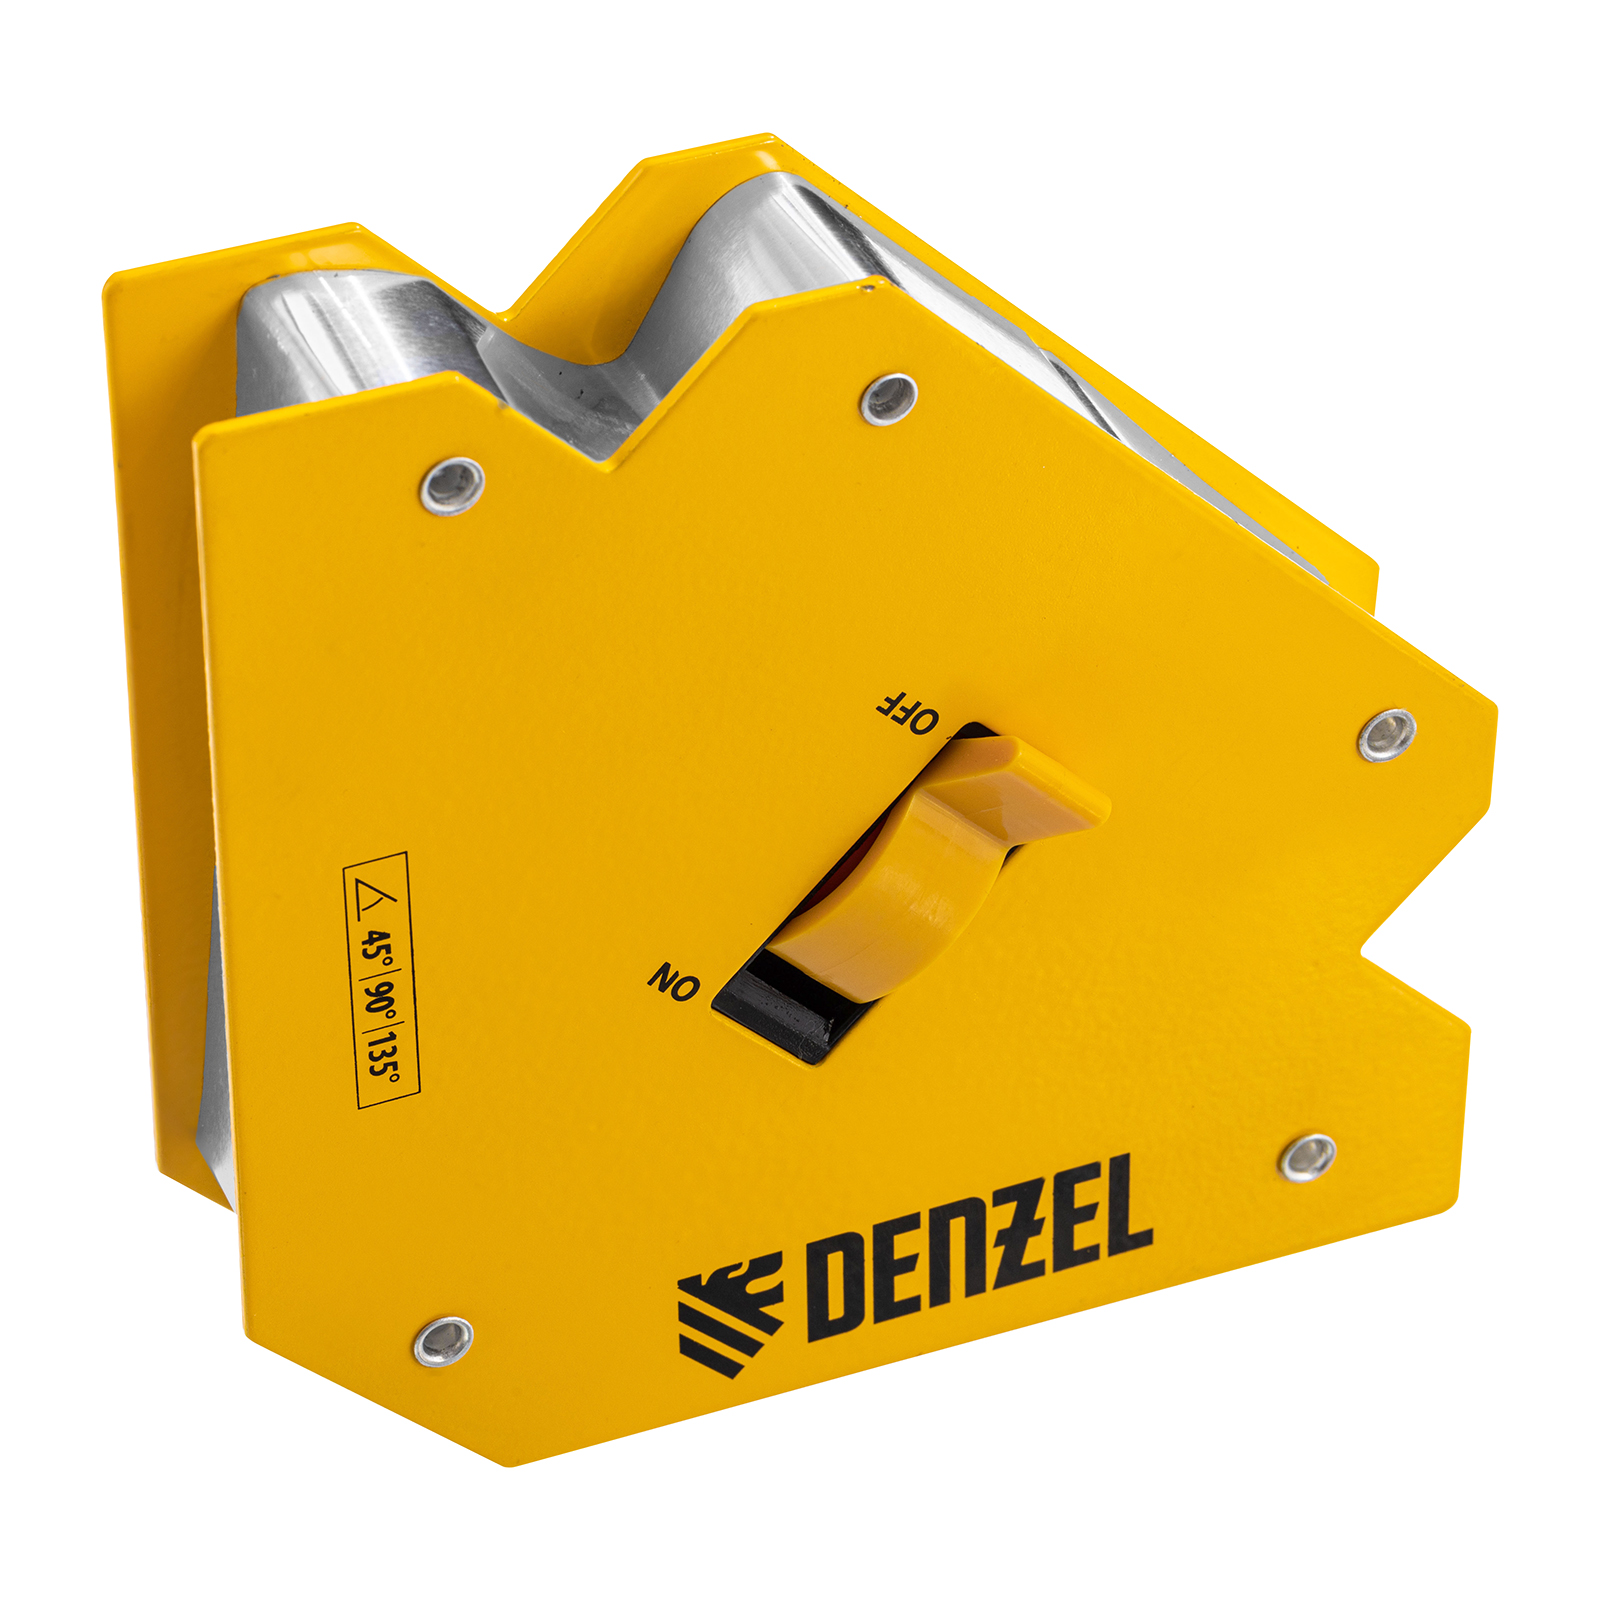 Фиксатор магнитный отключаемый для сварочных работ DENZEL усилие 55 LB, 45х90х135 гр 97564 фиксатор магнитный для сварочных работ с кнопкой forsage f 115wd14